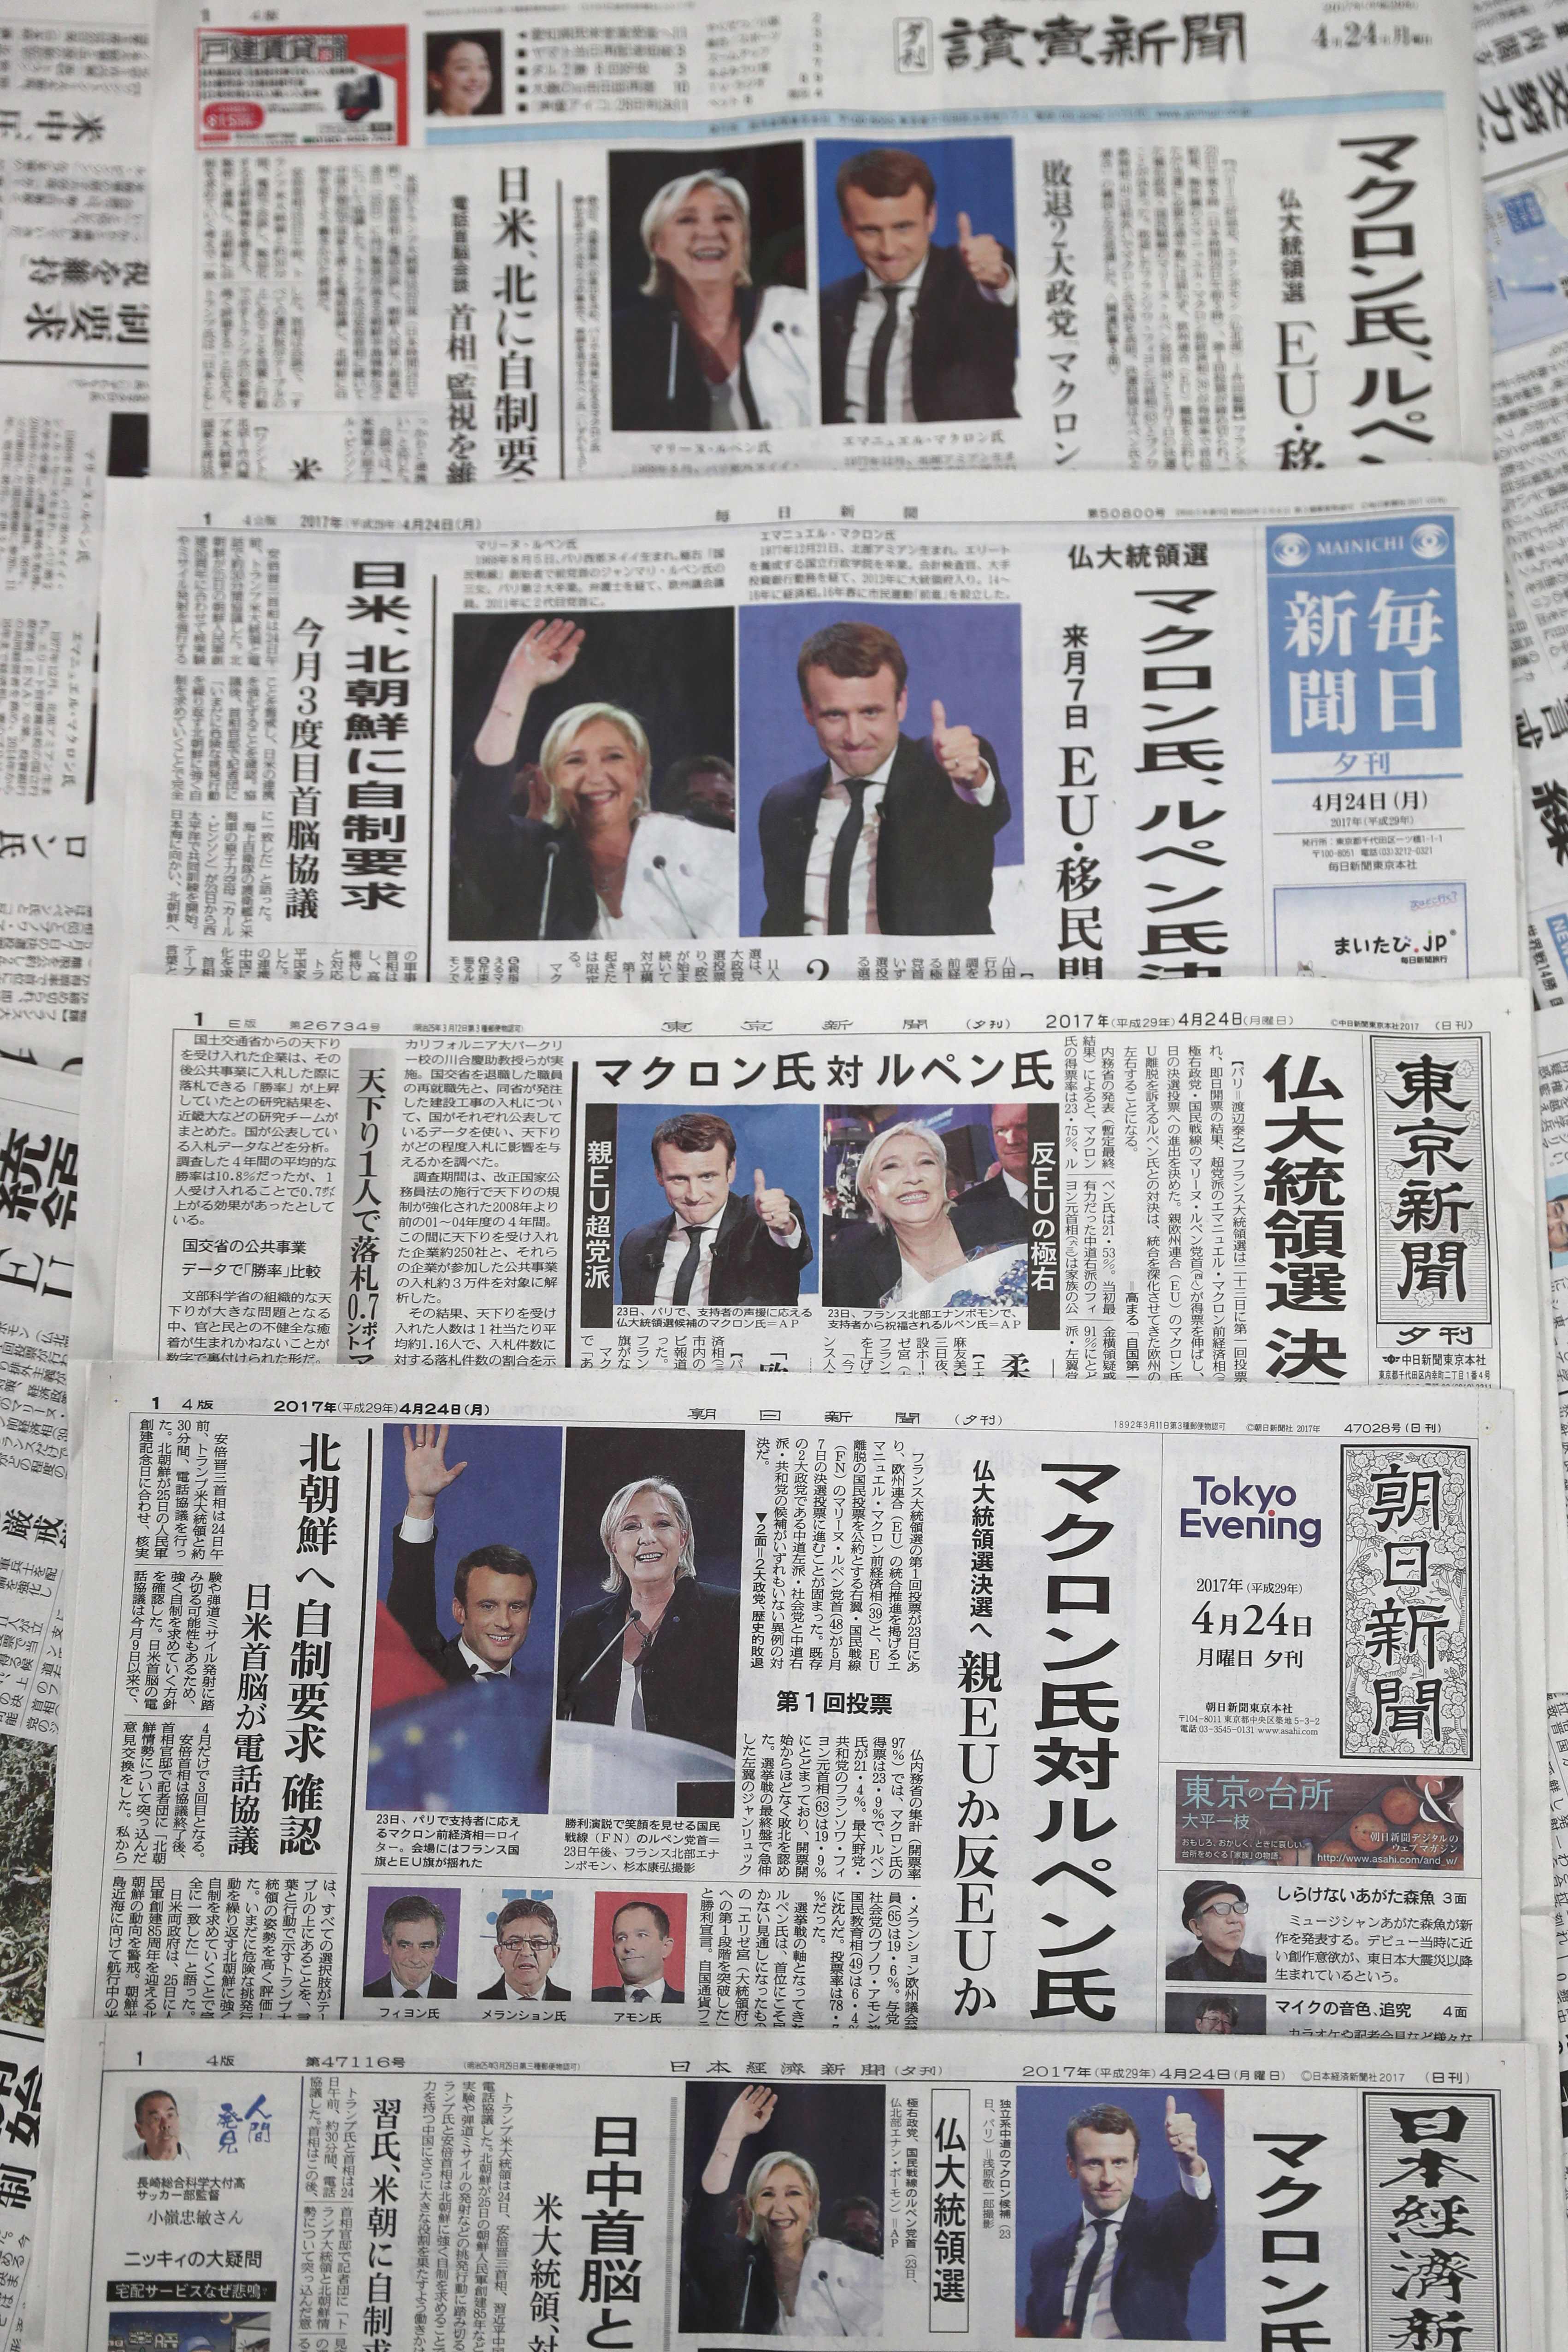 الصحف اليابانية تتناول تفاصيل انتخابات الرئاسة الفرنسية